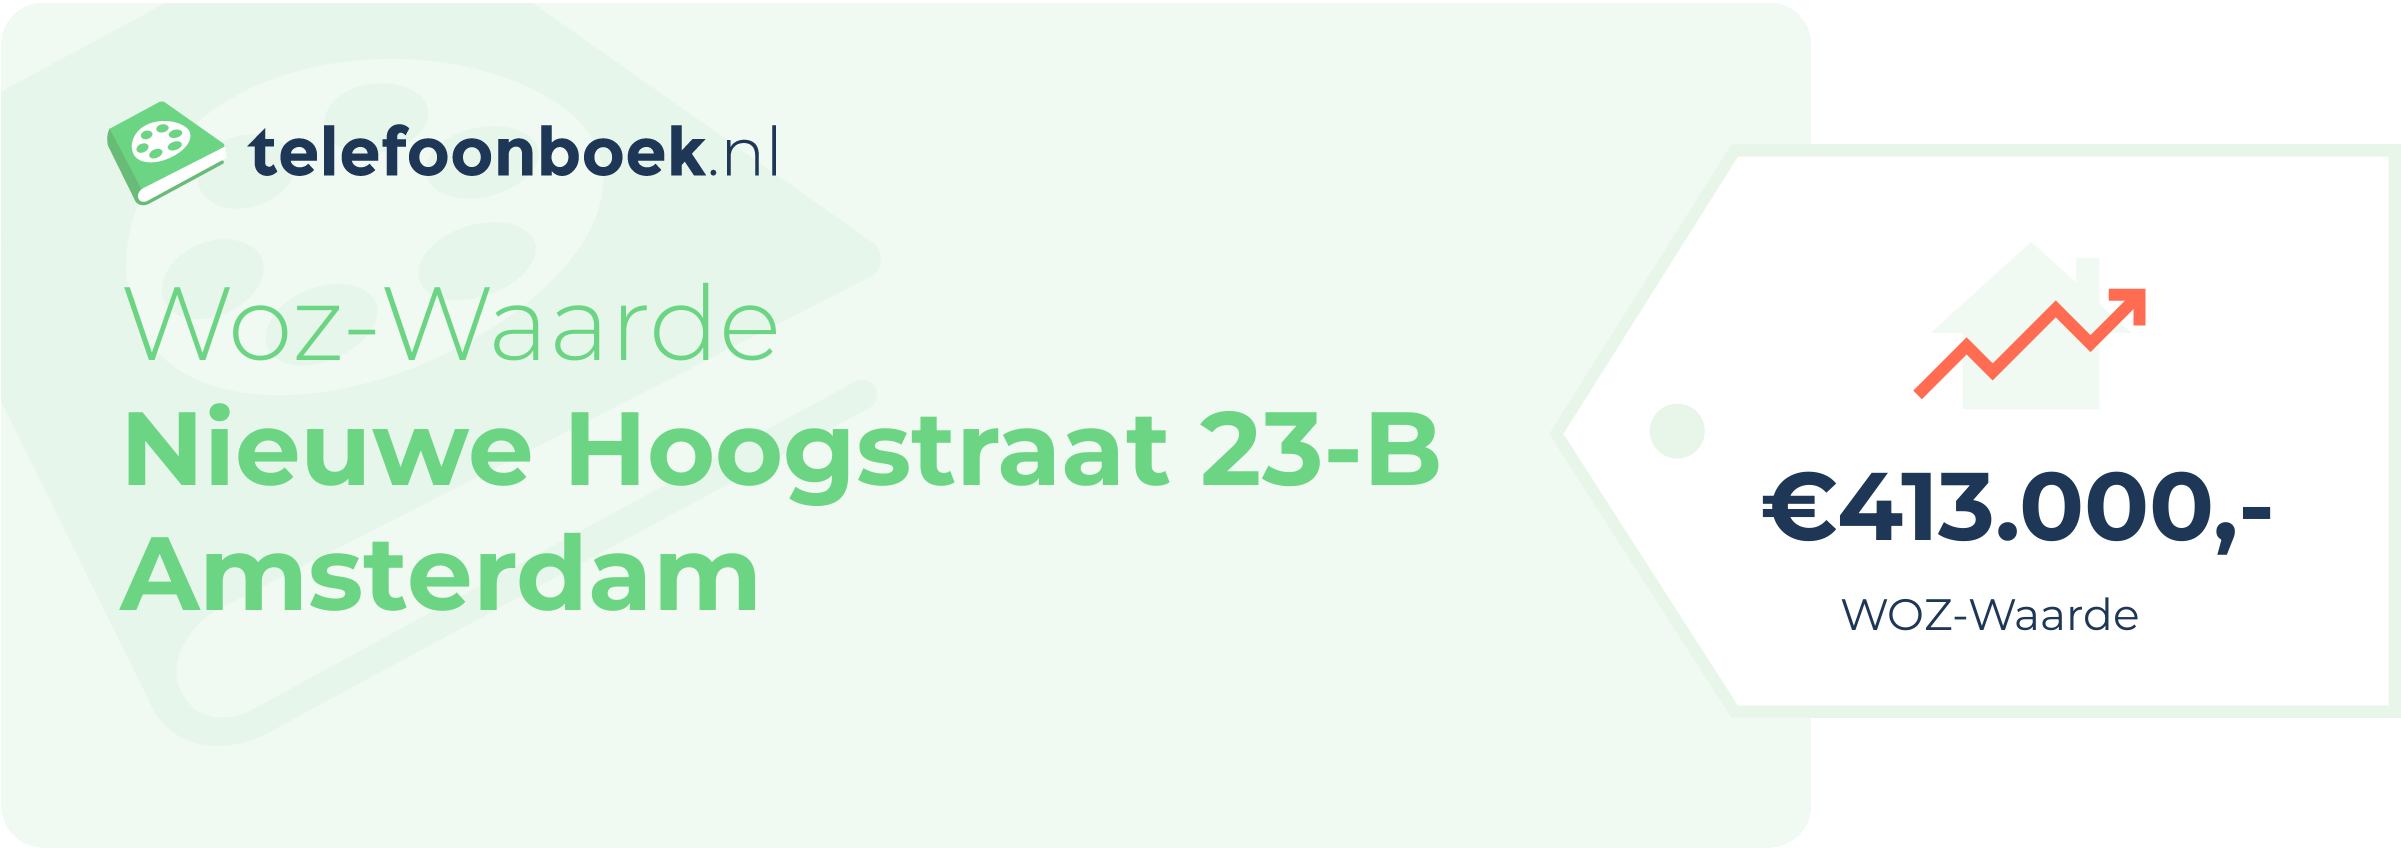 WOZ-waarde Nieuwe Hoogstraat 23-B Amsterdam